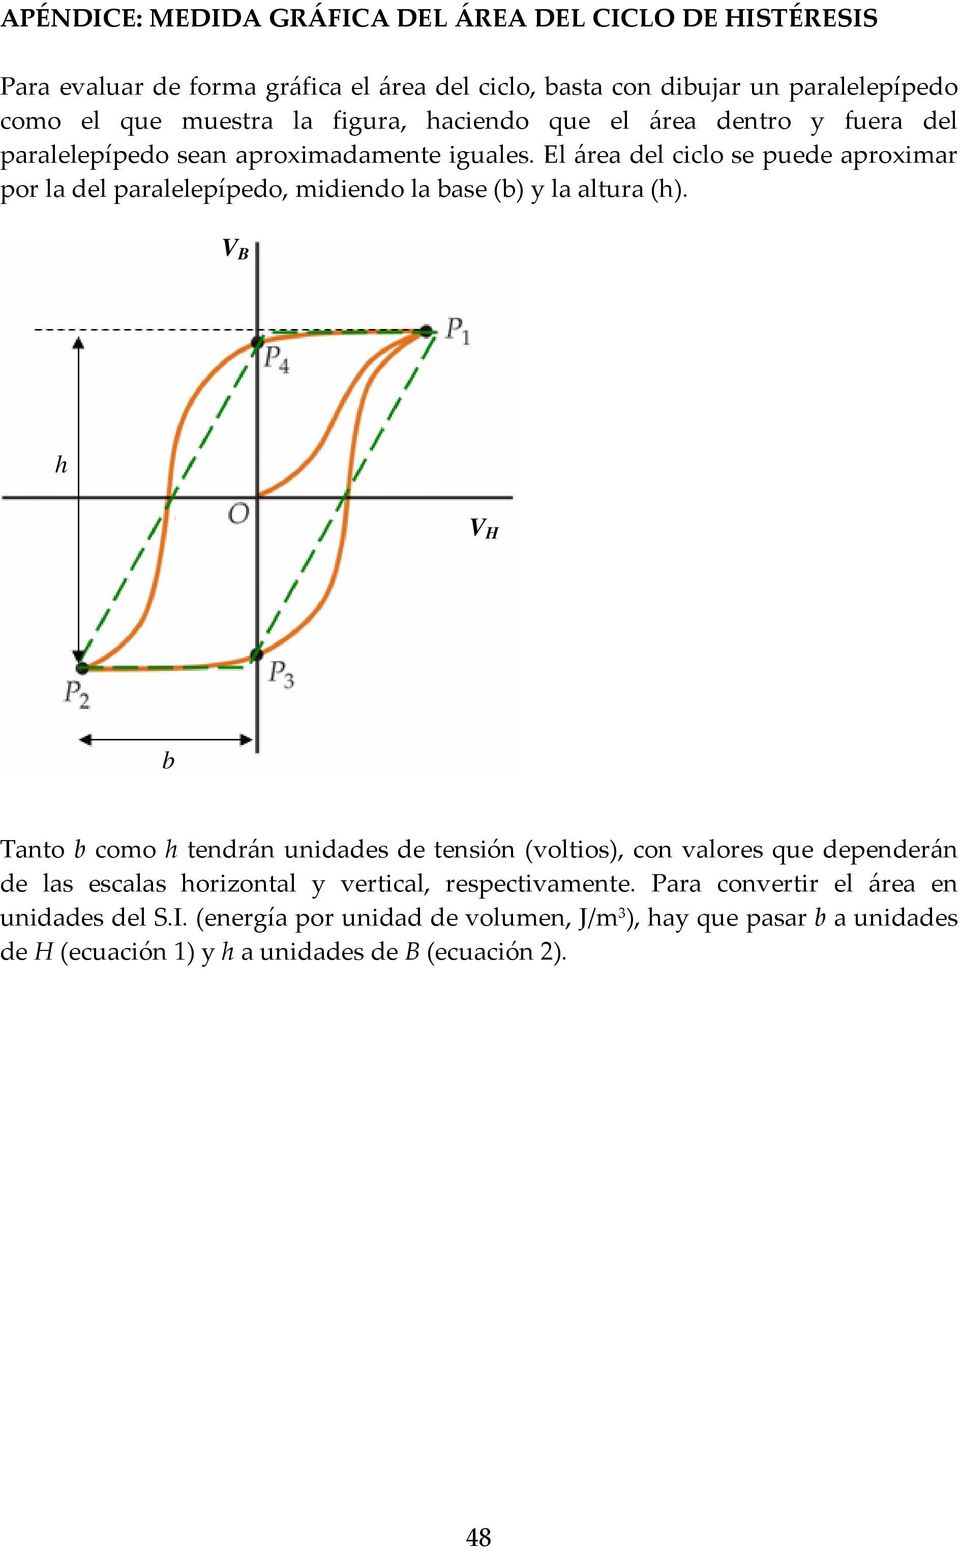 El área del ciclo se puede aproximar por la del paralelepípedo, midiendo la base (b) y la altura (h).